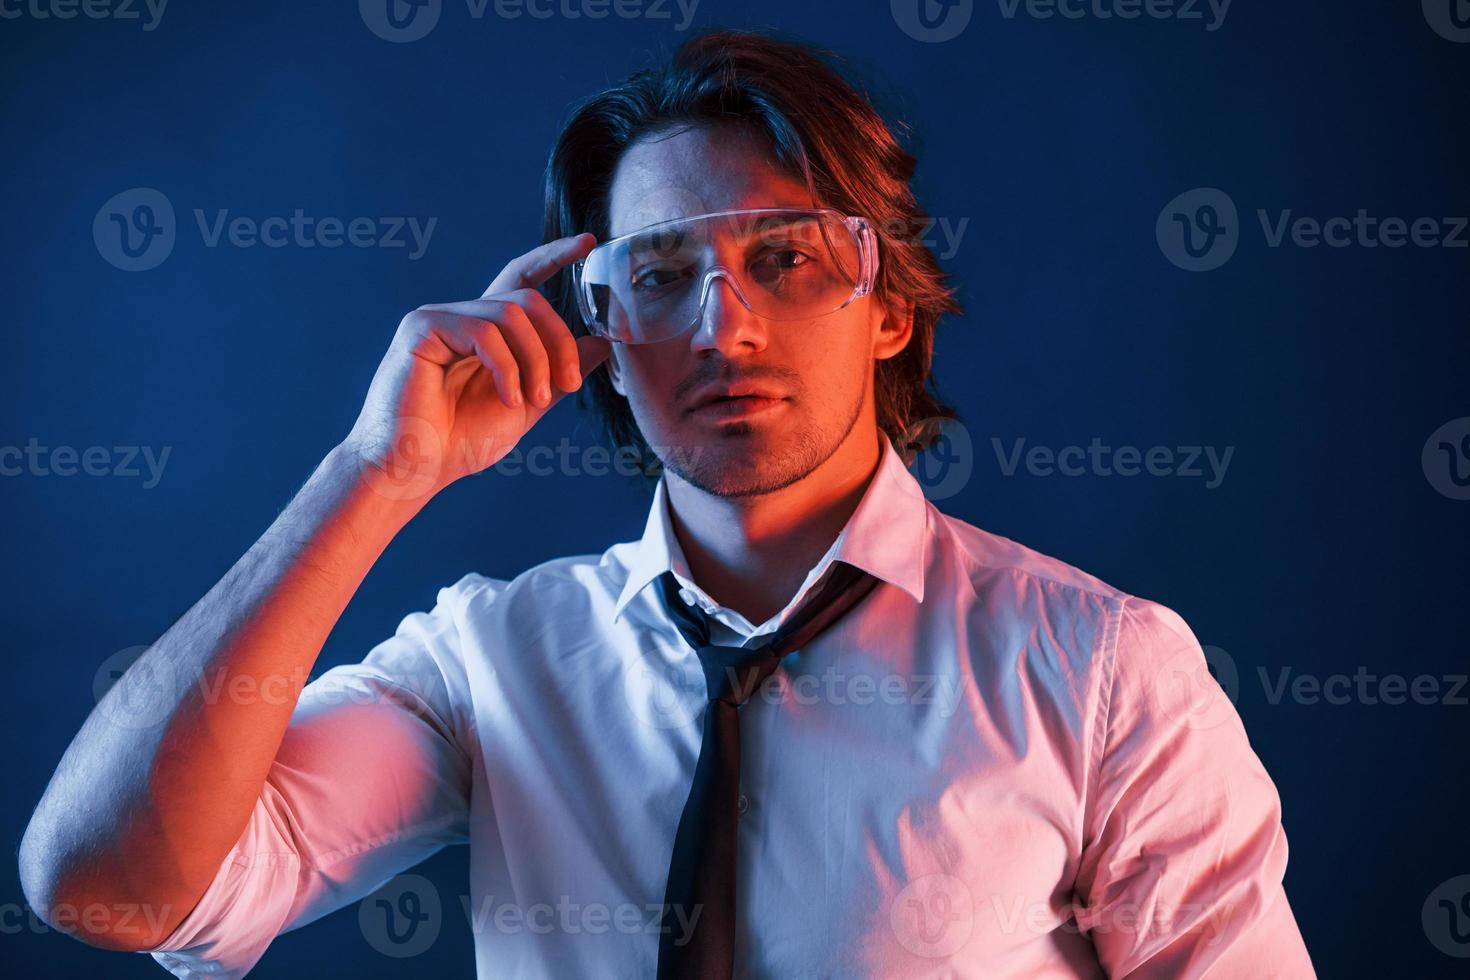 bellissimo uomo nel bicchieri e nel completo da uomo e cravatta è nel il studio con blu neon illuminazione foto